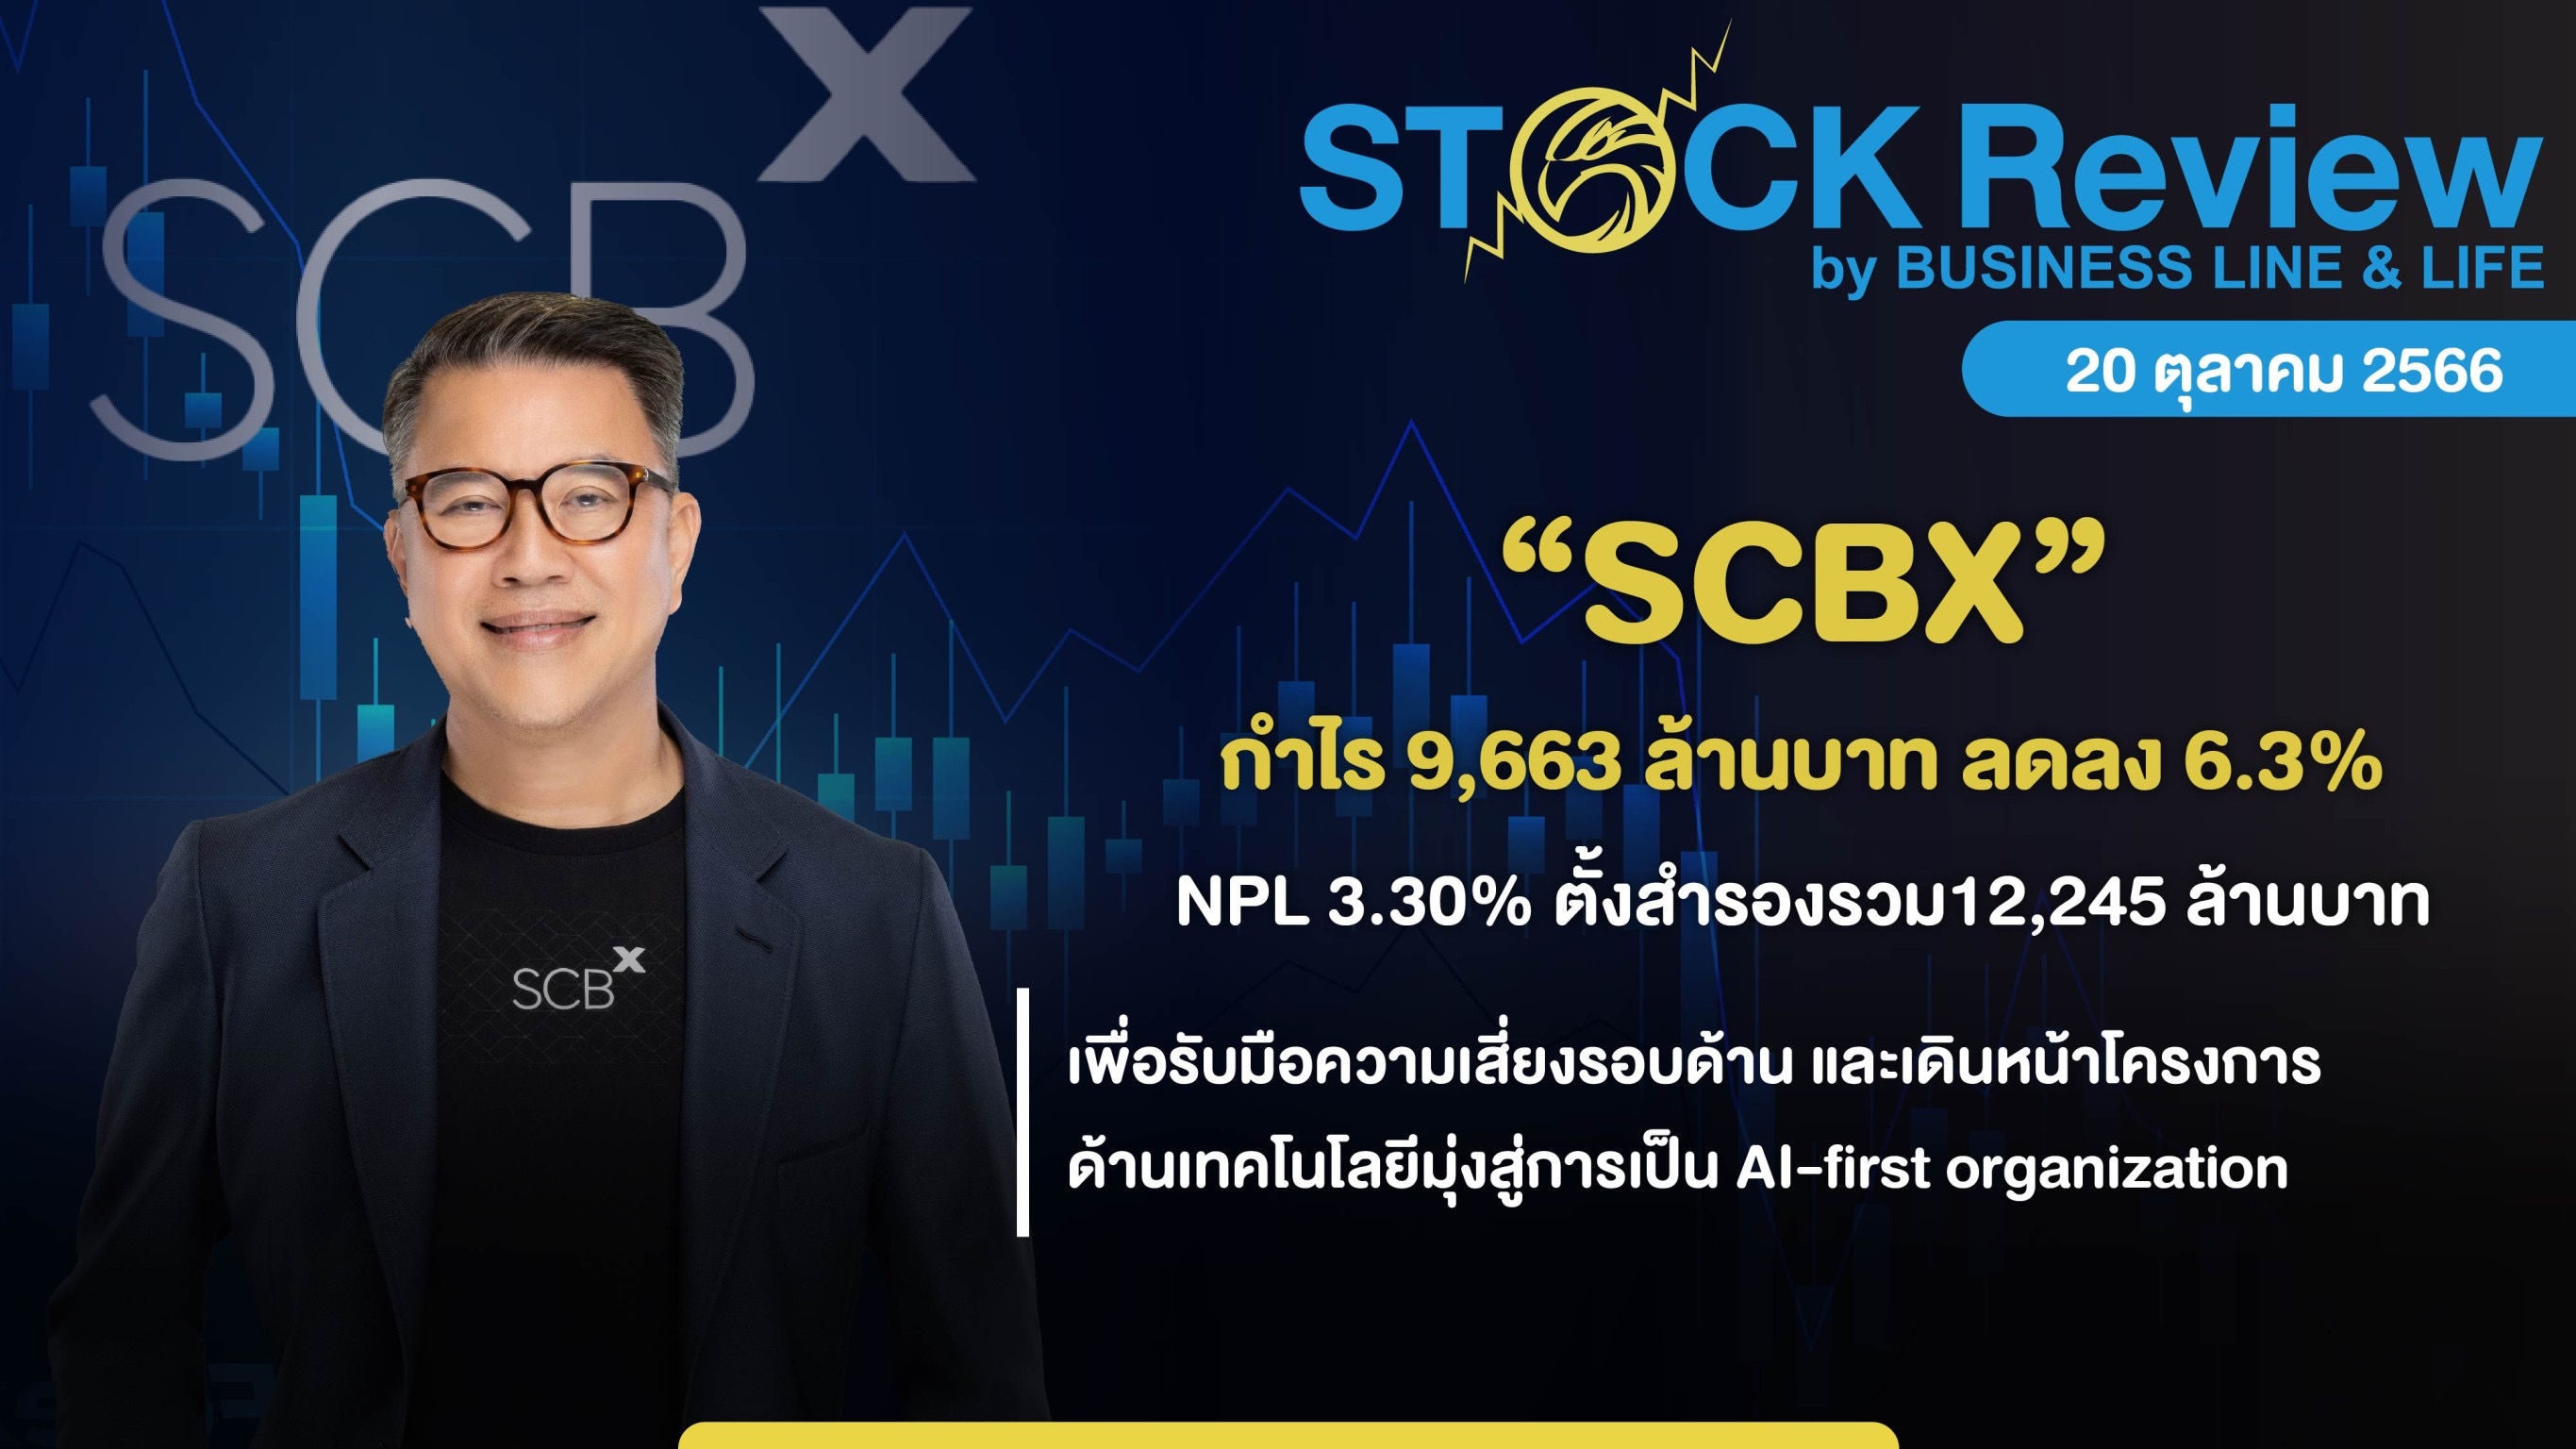 SCBX กำไร 9,663 ล้านบาท ลดลง 6.3%